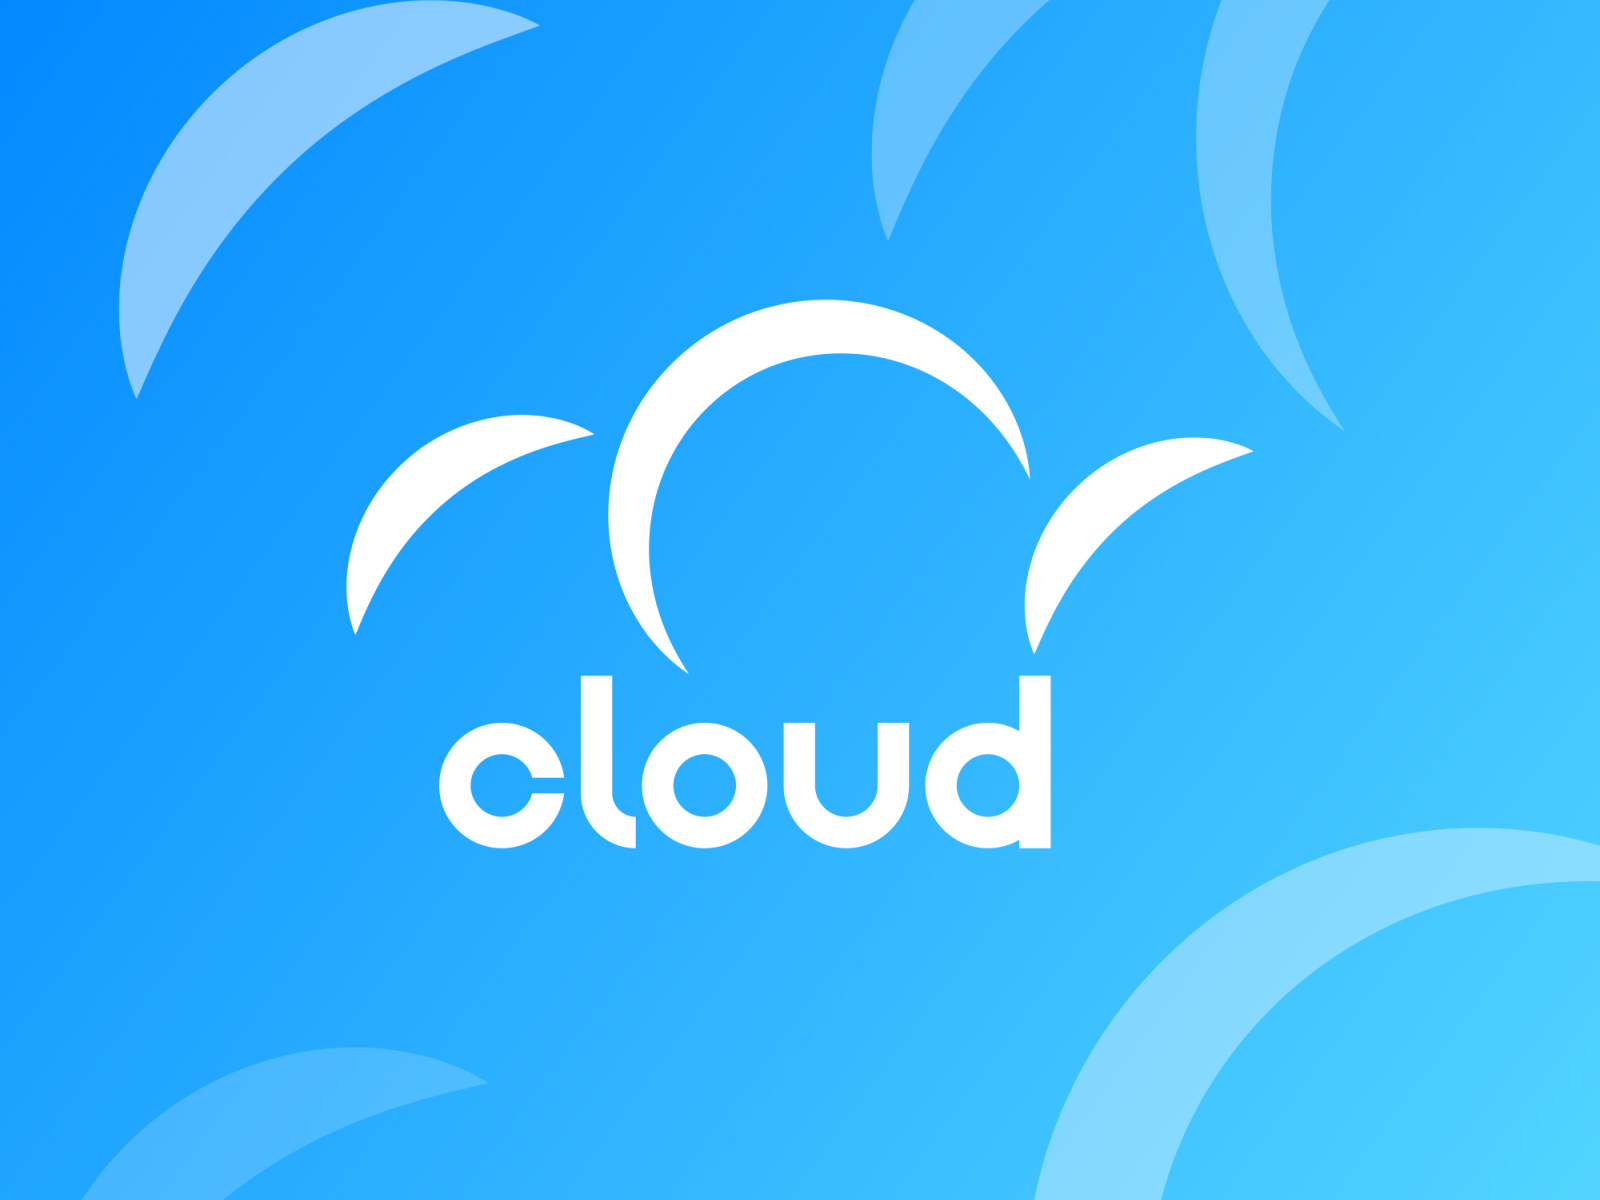 Cloud logo by Dan on Dribbble